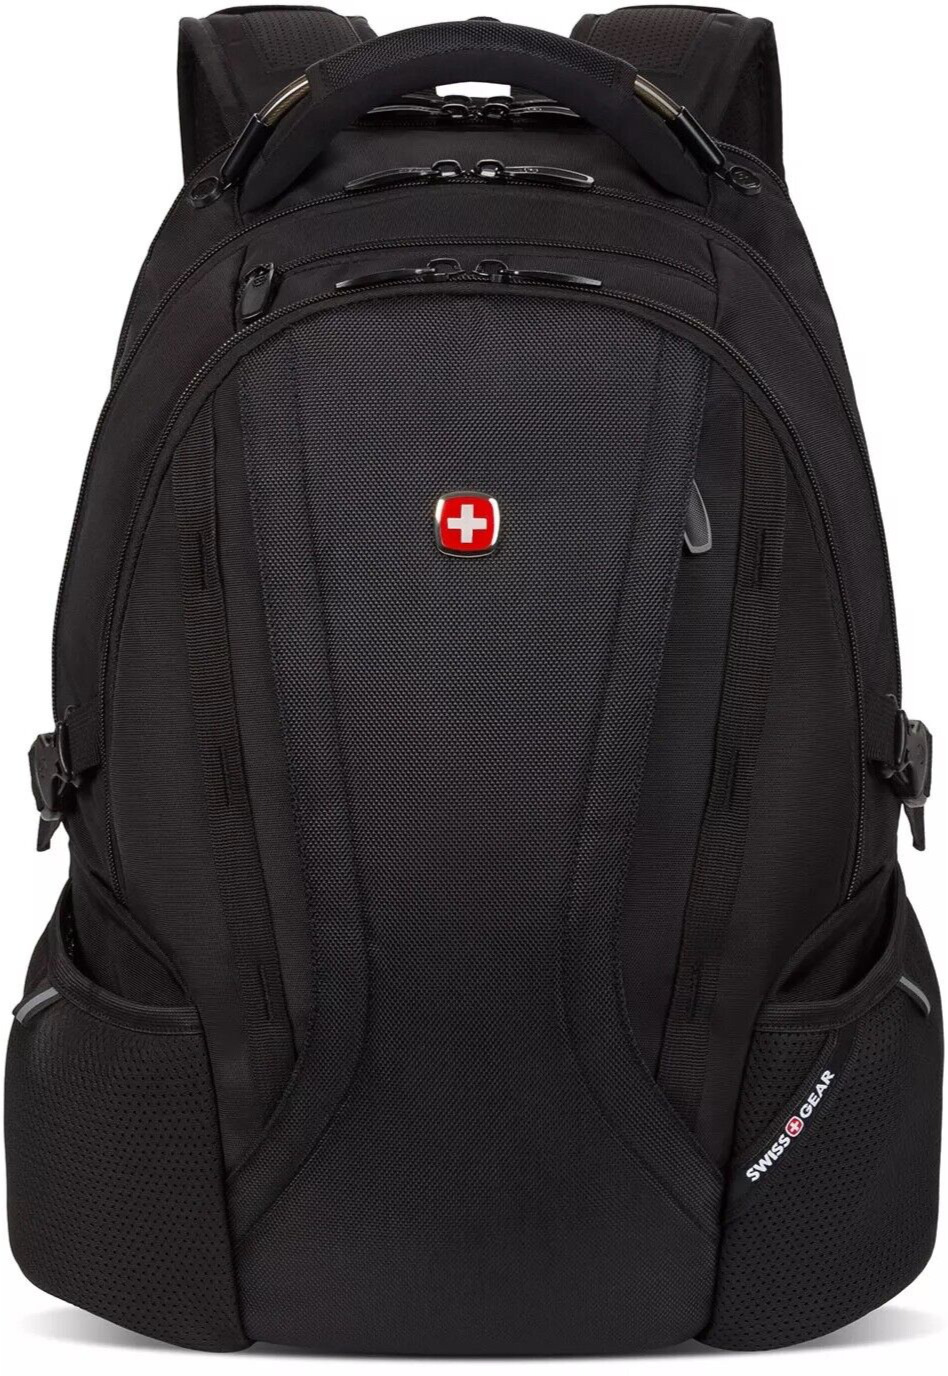 Swiss Gear 3760 ScanSmart TSA Laptop Friendly All-in-One Backpack, Black